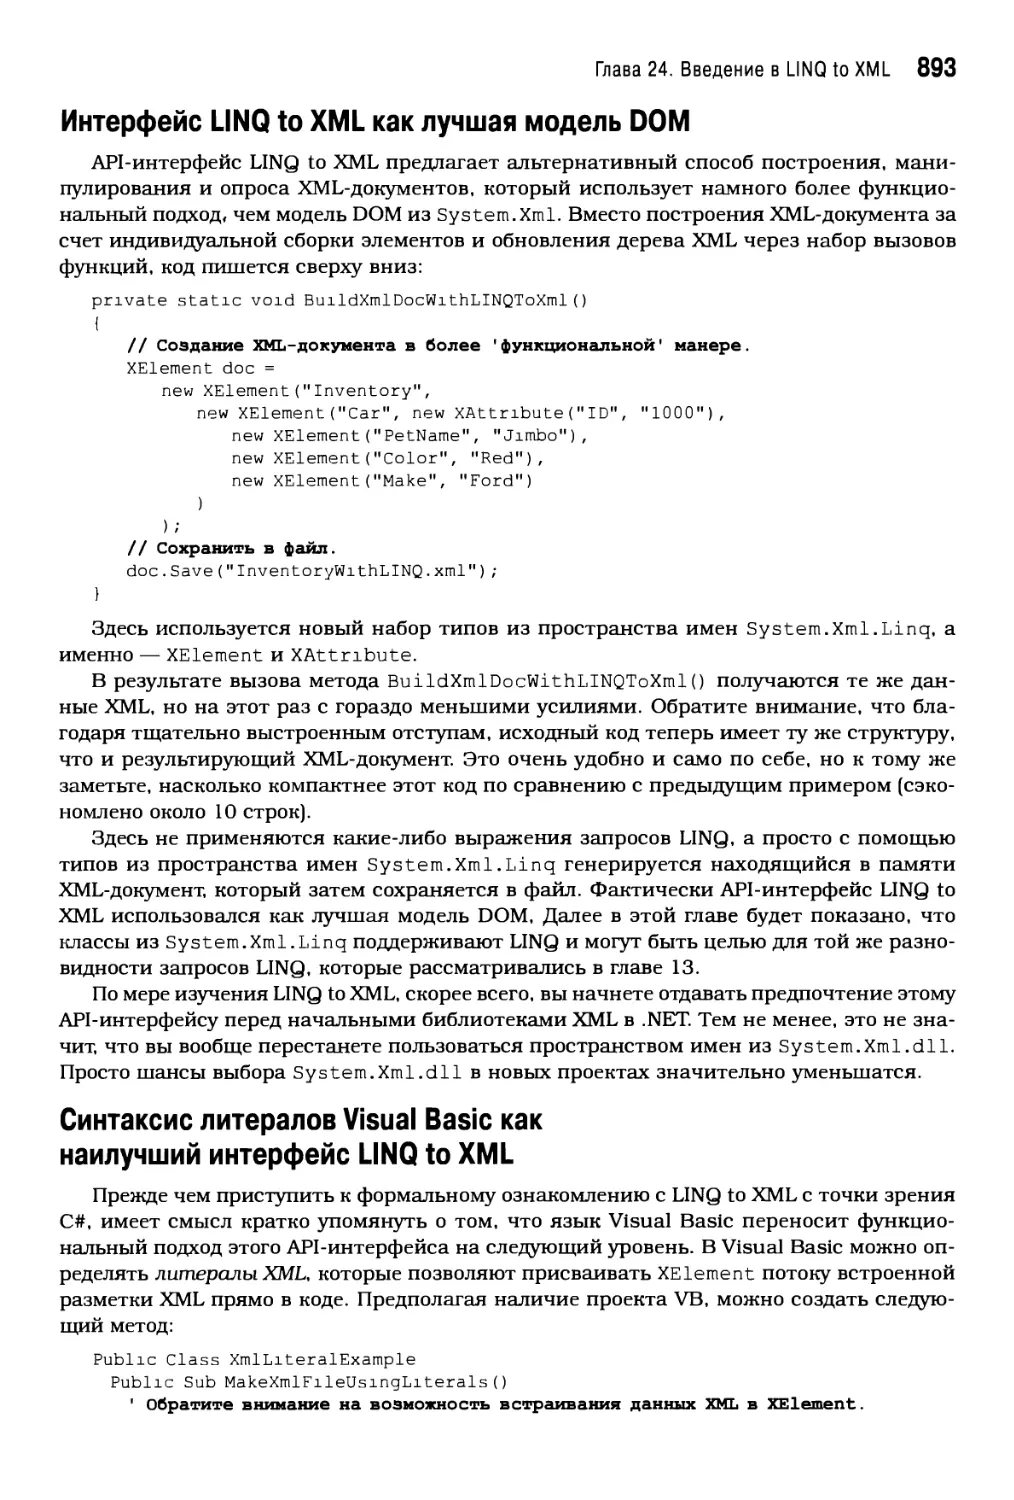 Синтаксис литералов Visual Basic как наилучший интерфейс LINQ to XML